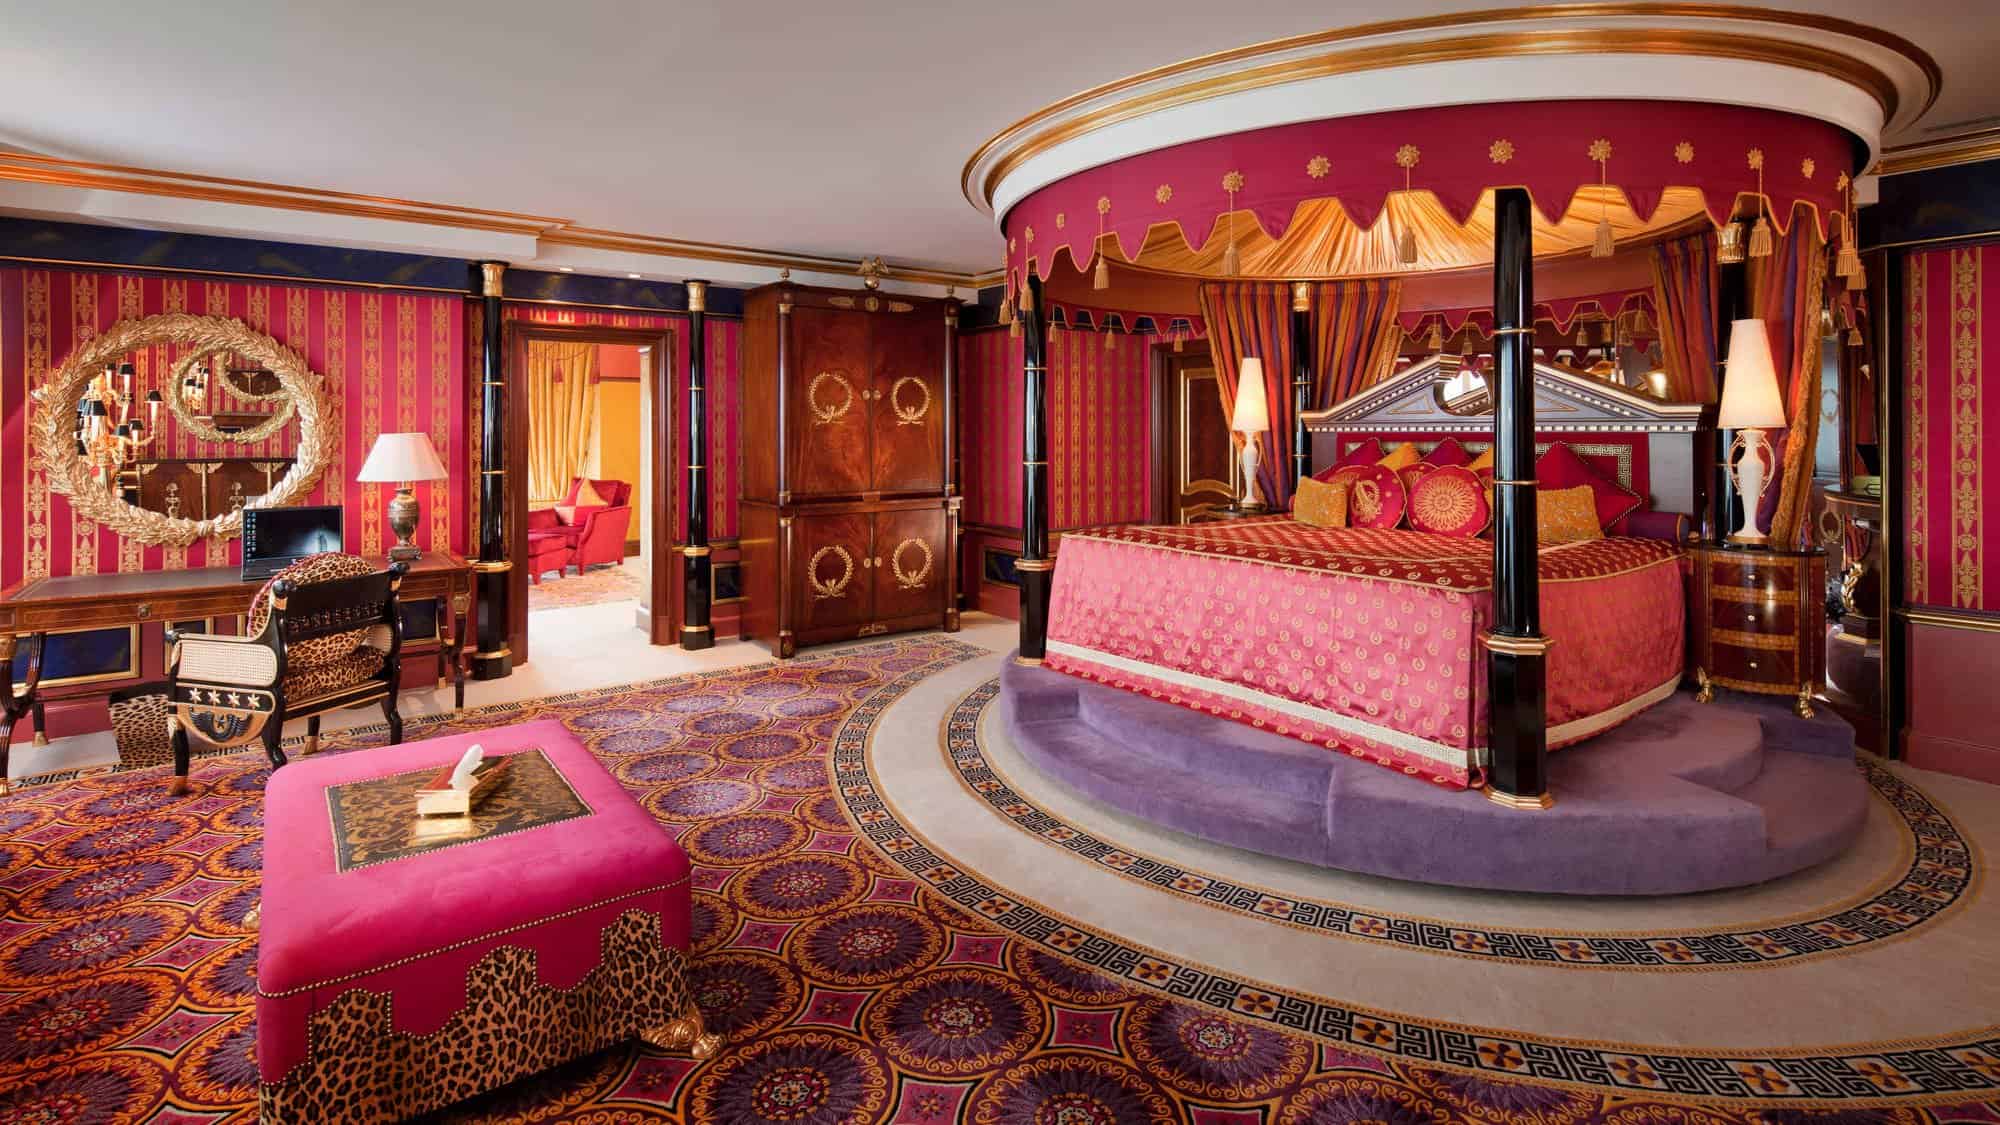 The Royal Suite at Burj al Arab Dubai Bedroom